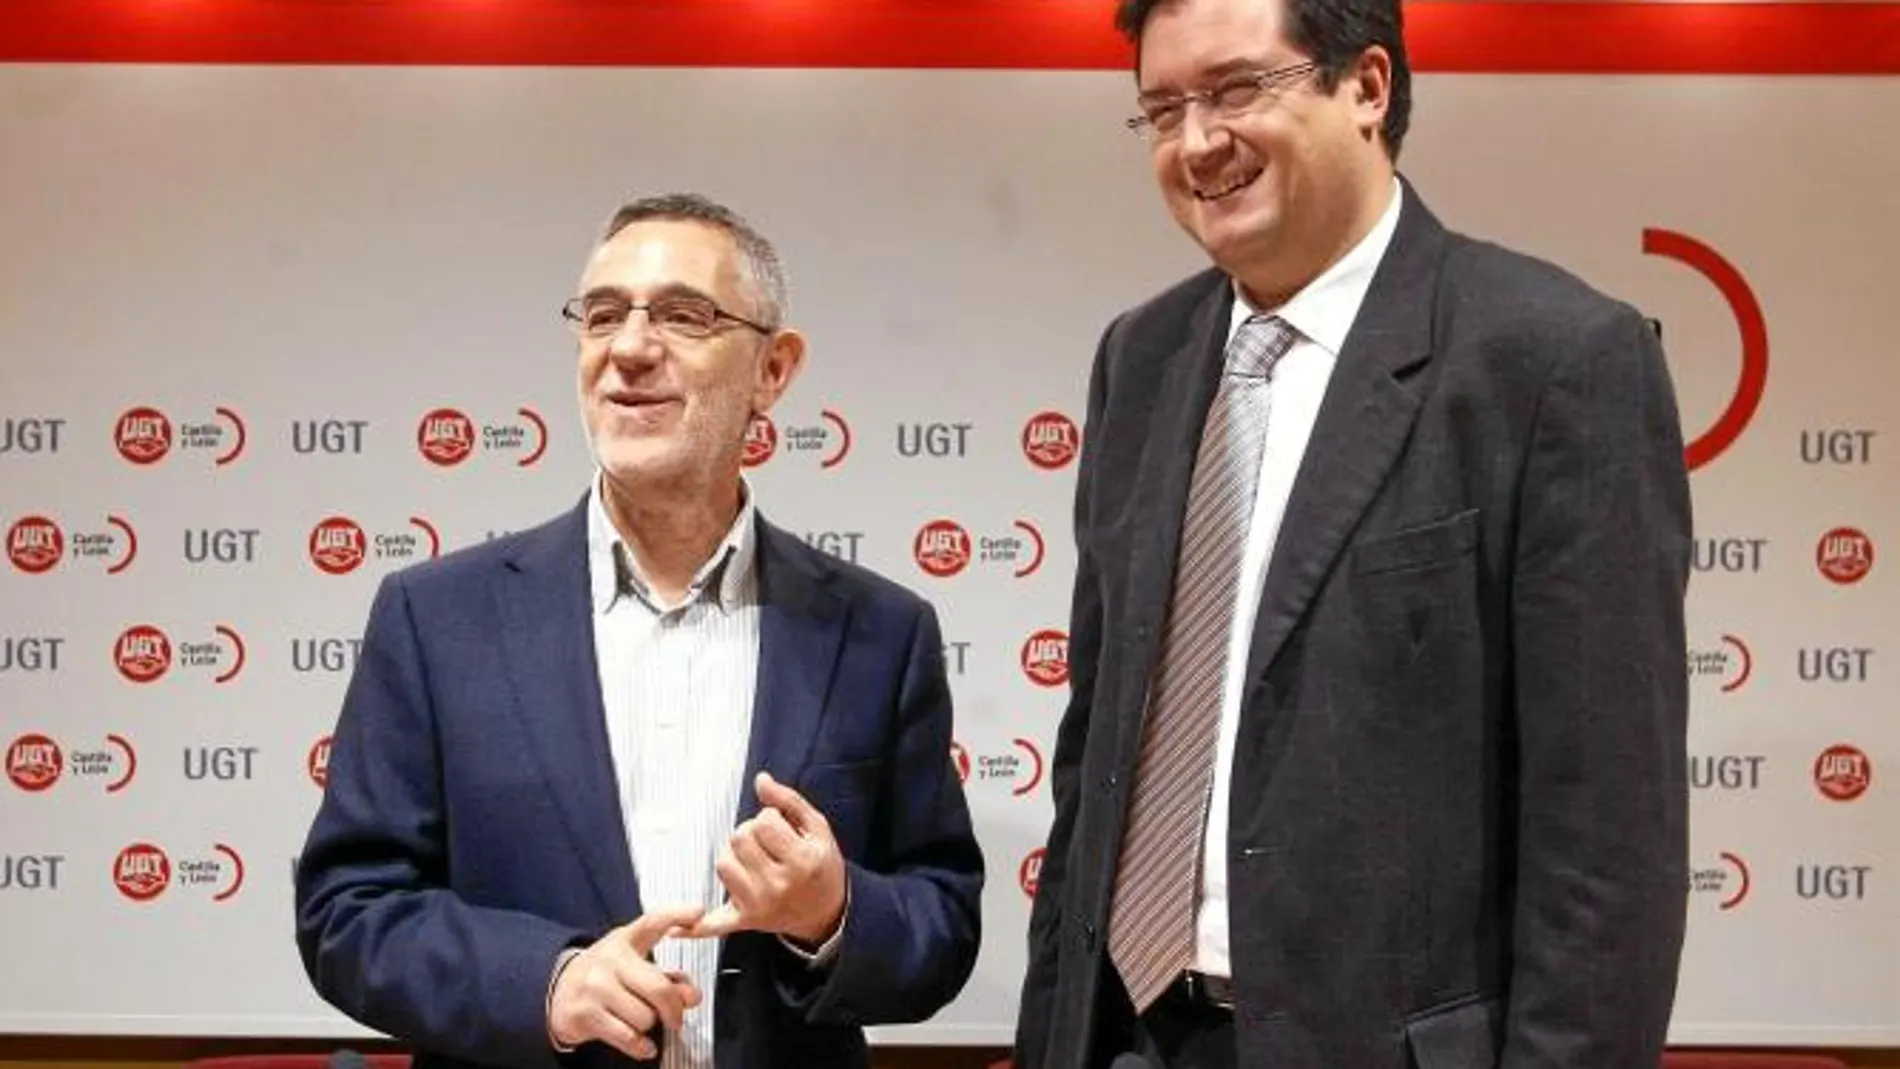 El PSOE plantea un modelo fiscal «justo y progresivo» que grave al que más tiene